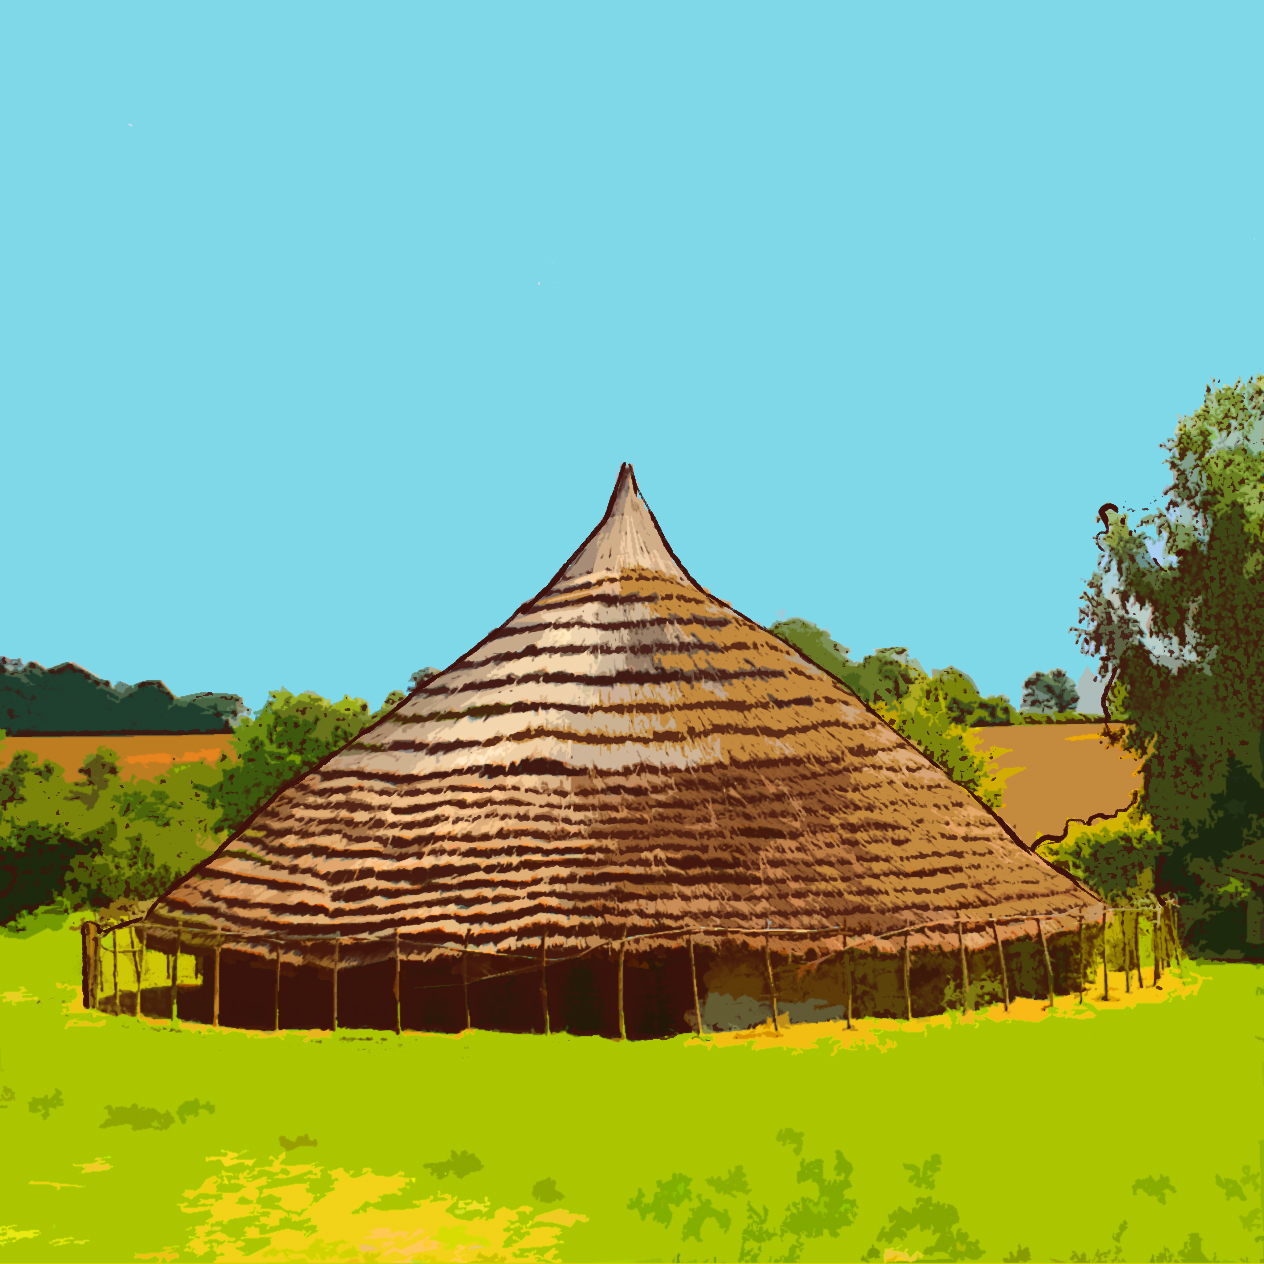 Iron Age Settlement